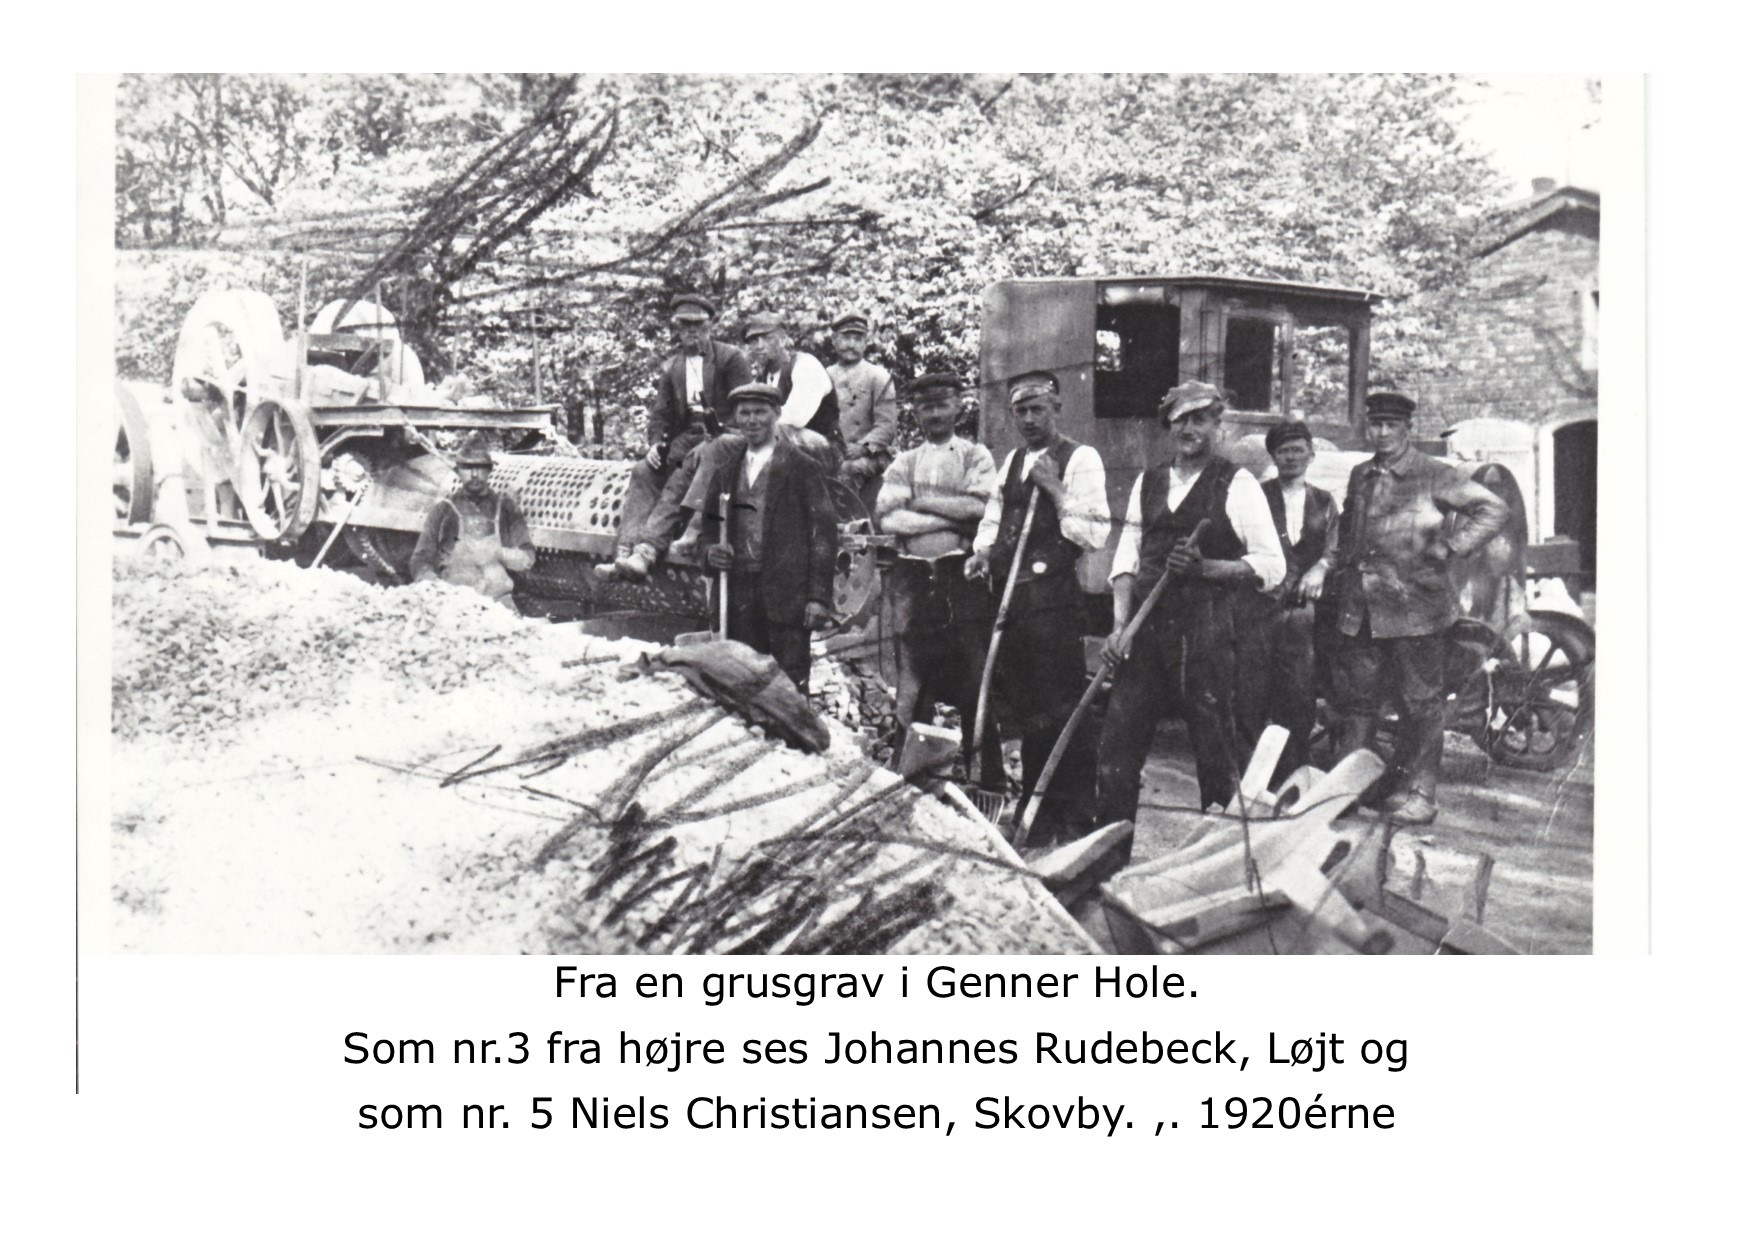 Grusgravning i Genner Hole 1925 